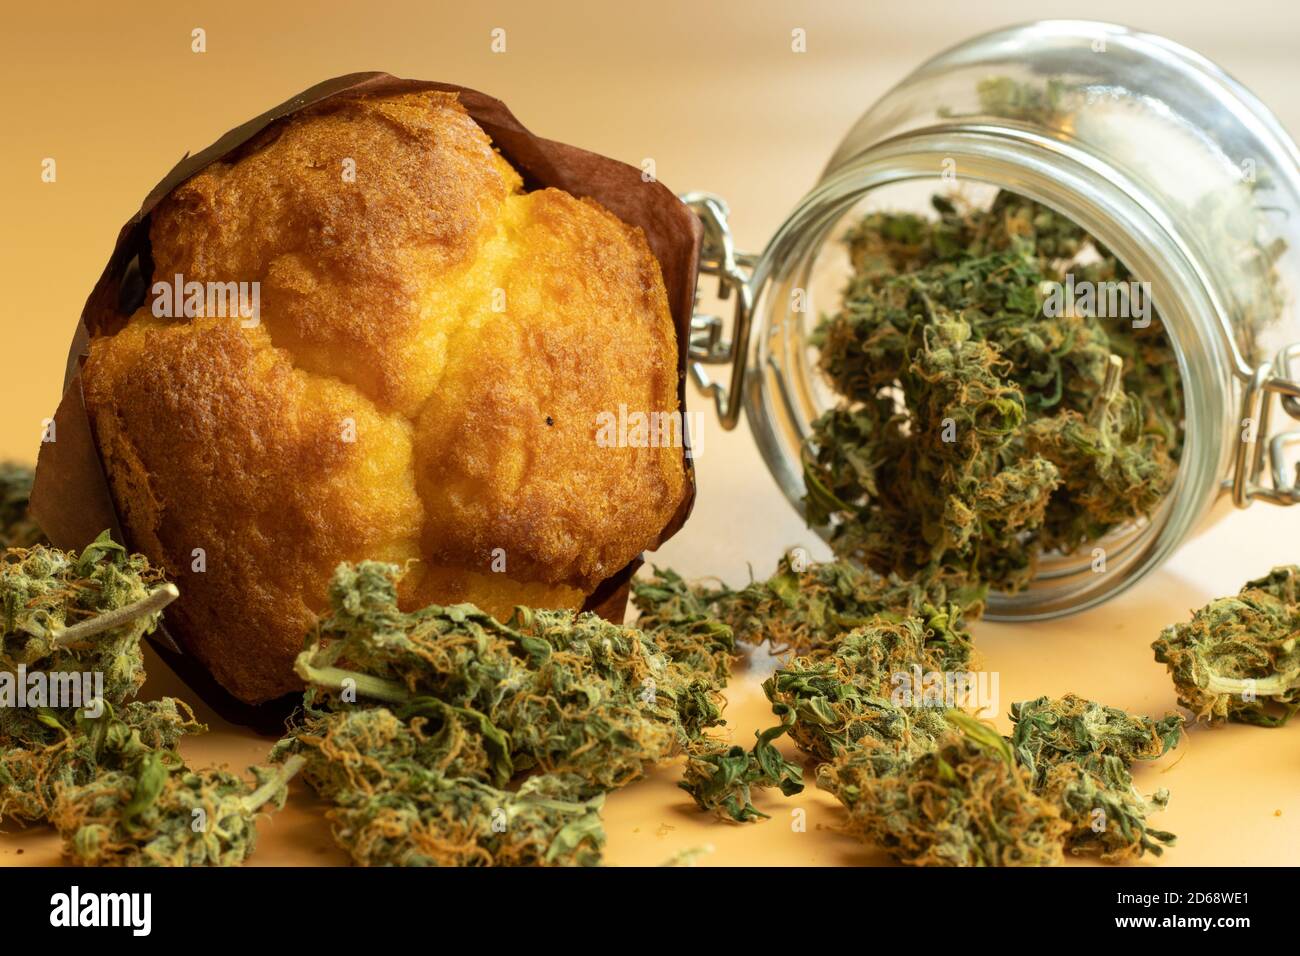 Muffin mit Cannabisknospen. Marihuana-Lebensmittelprodukte. Legale THC medizinische oder Freizeitnutzung Stockfoto